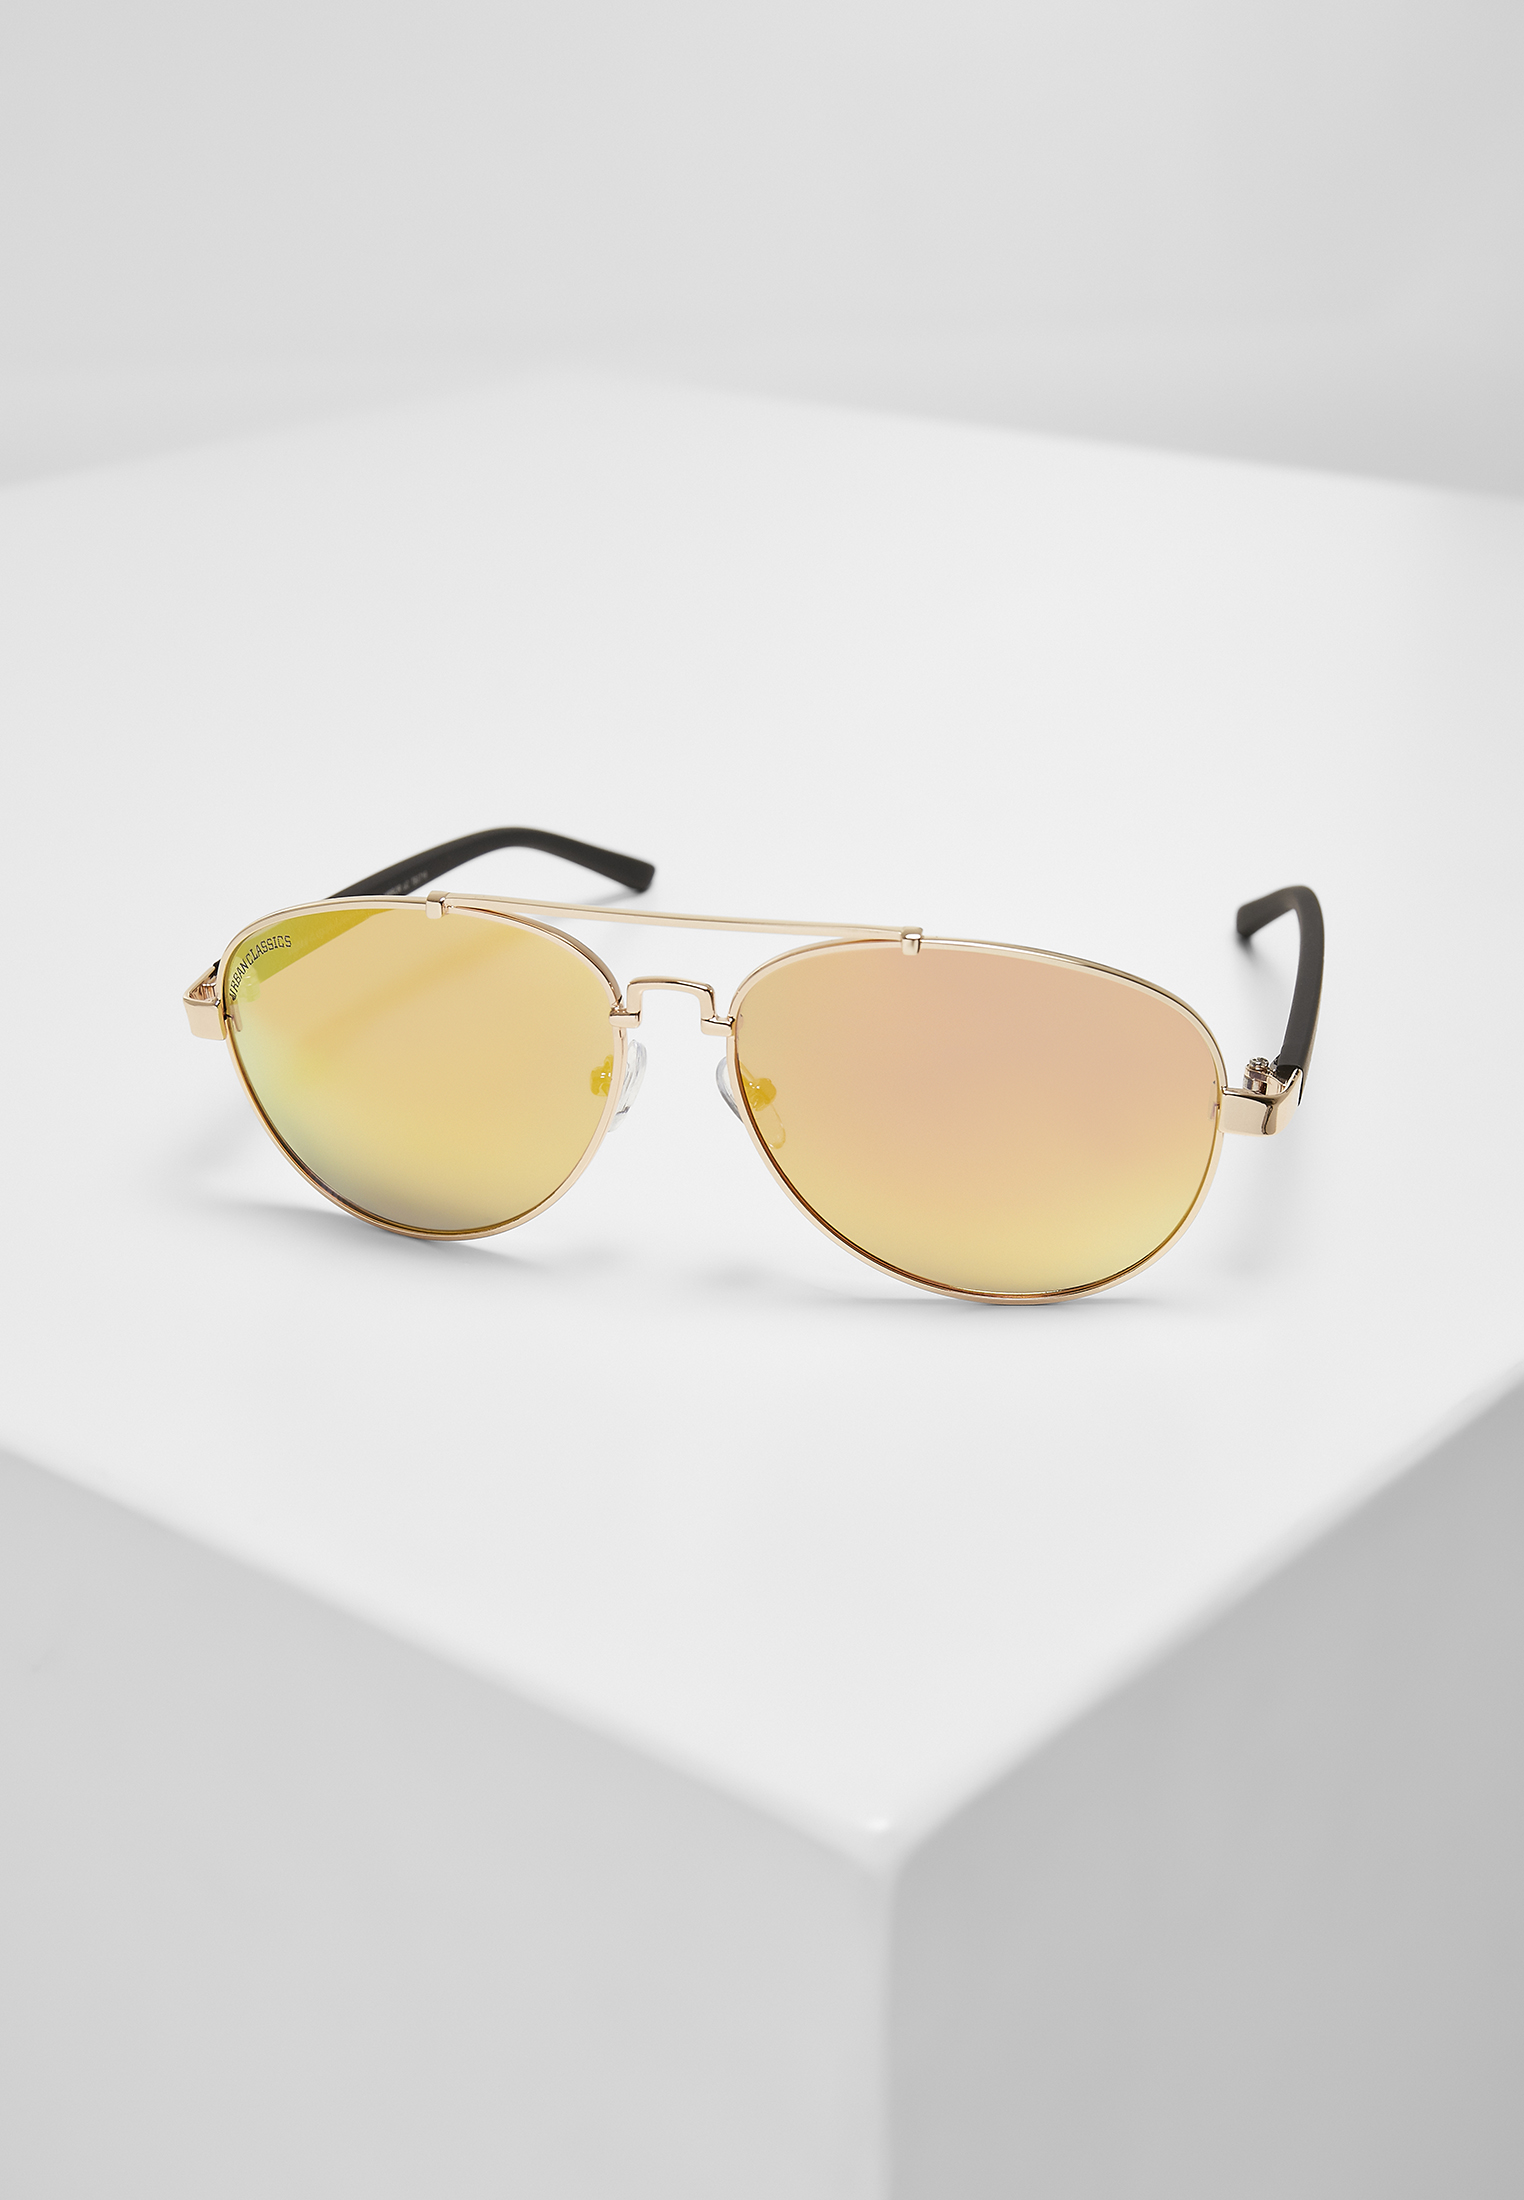 Sonnenbrillen Sunglasses Mumbo Mirror UC in Farbe gold/orange